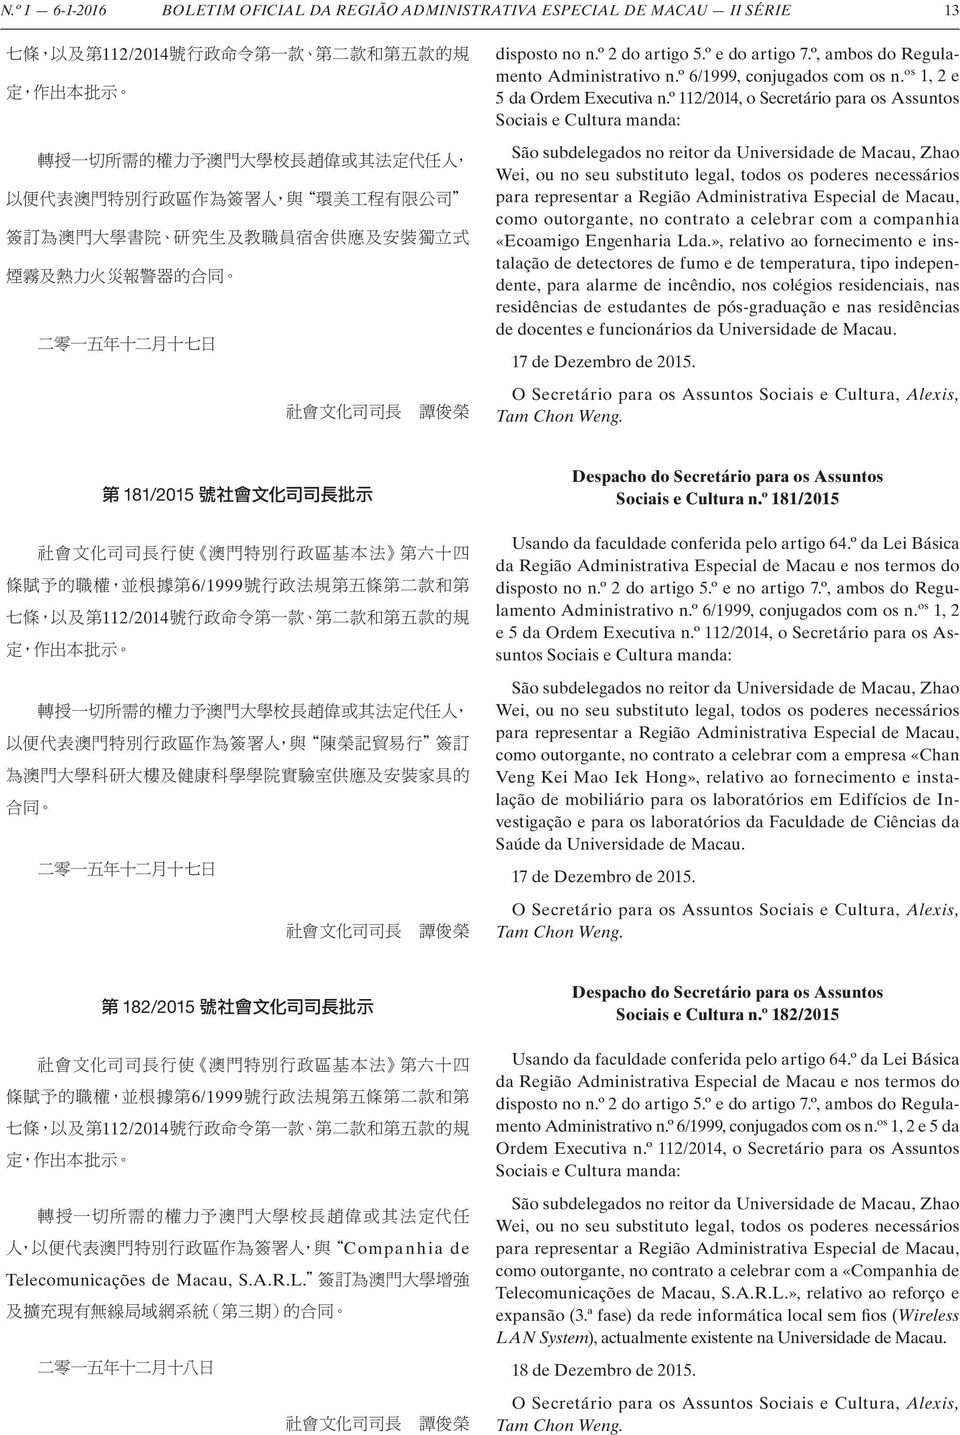 º 112/2014, o Secretário para os Assuntos Sociais e Cultura manda: São subdelegados no reitor da Universidade de Macau, Zhao Wei, ou no seu substituto legal, todos os poderes necessários para